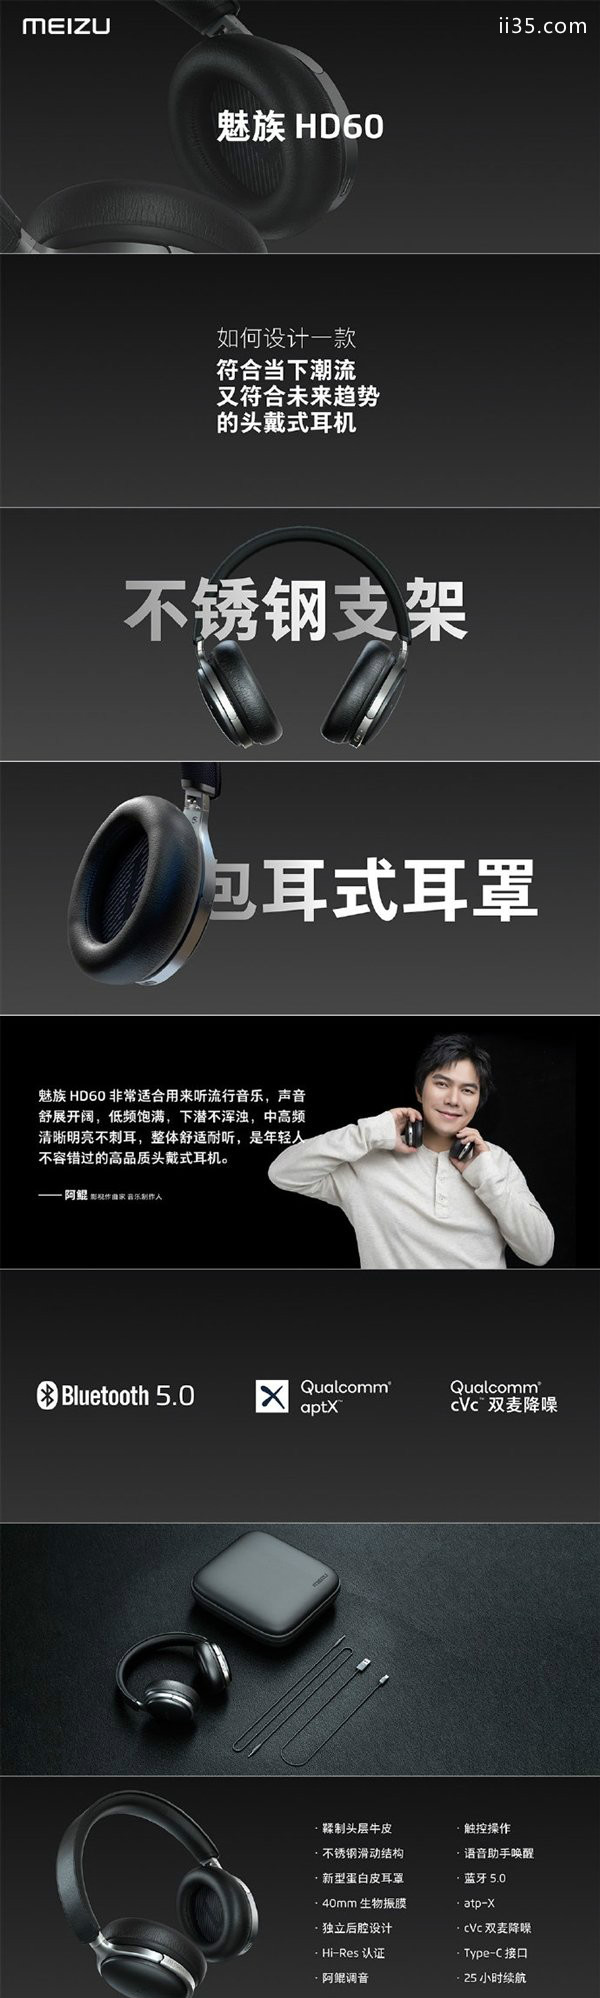 魅族HD60头戴式蓝牙耳机发布：续航25小时 支持触控